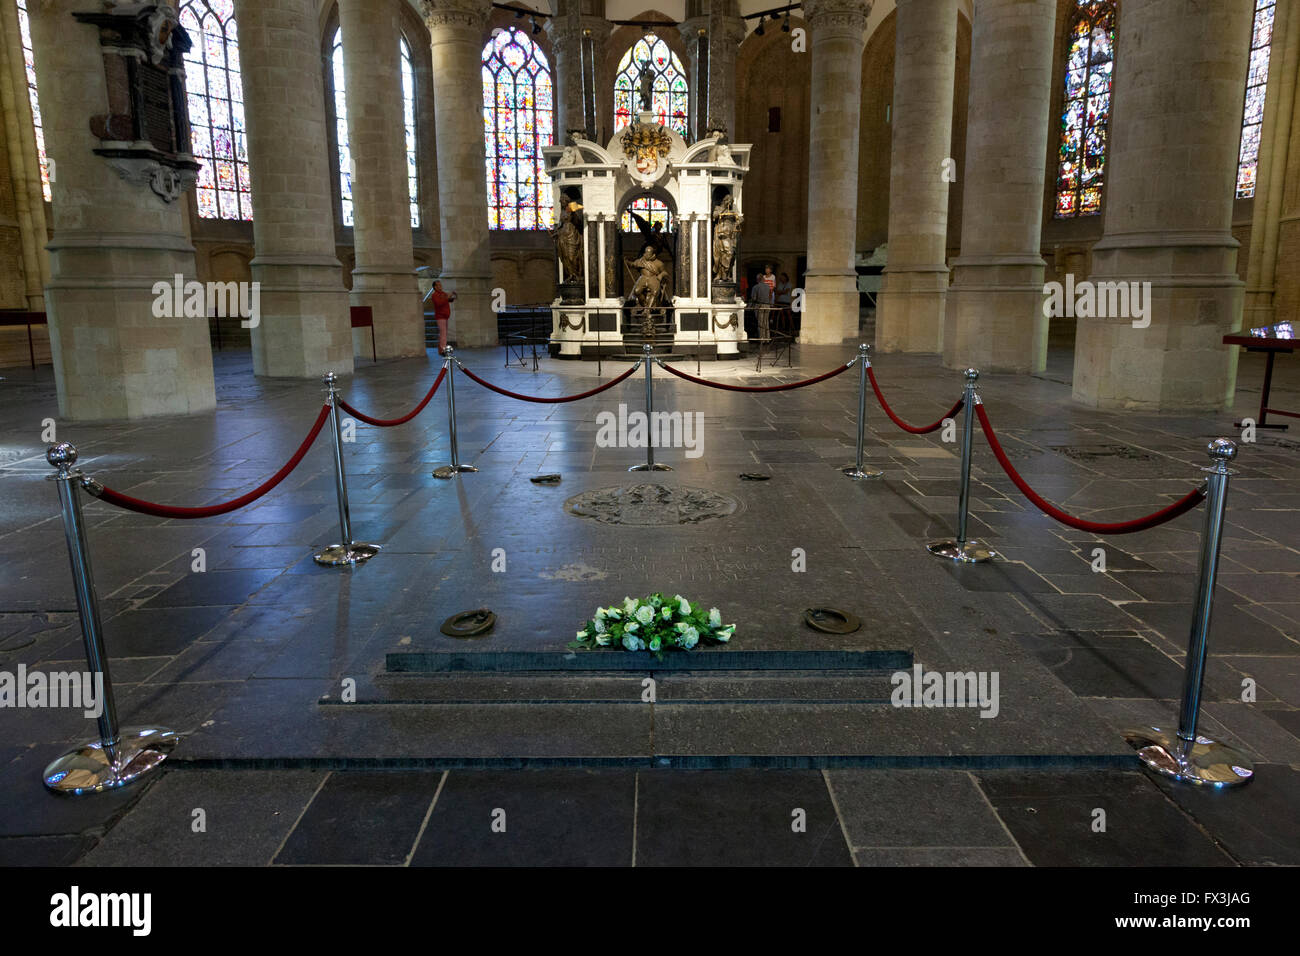 Mausoleum of William the Silent  in de nieuwe kerk in Delft, Holland Stock Photo